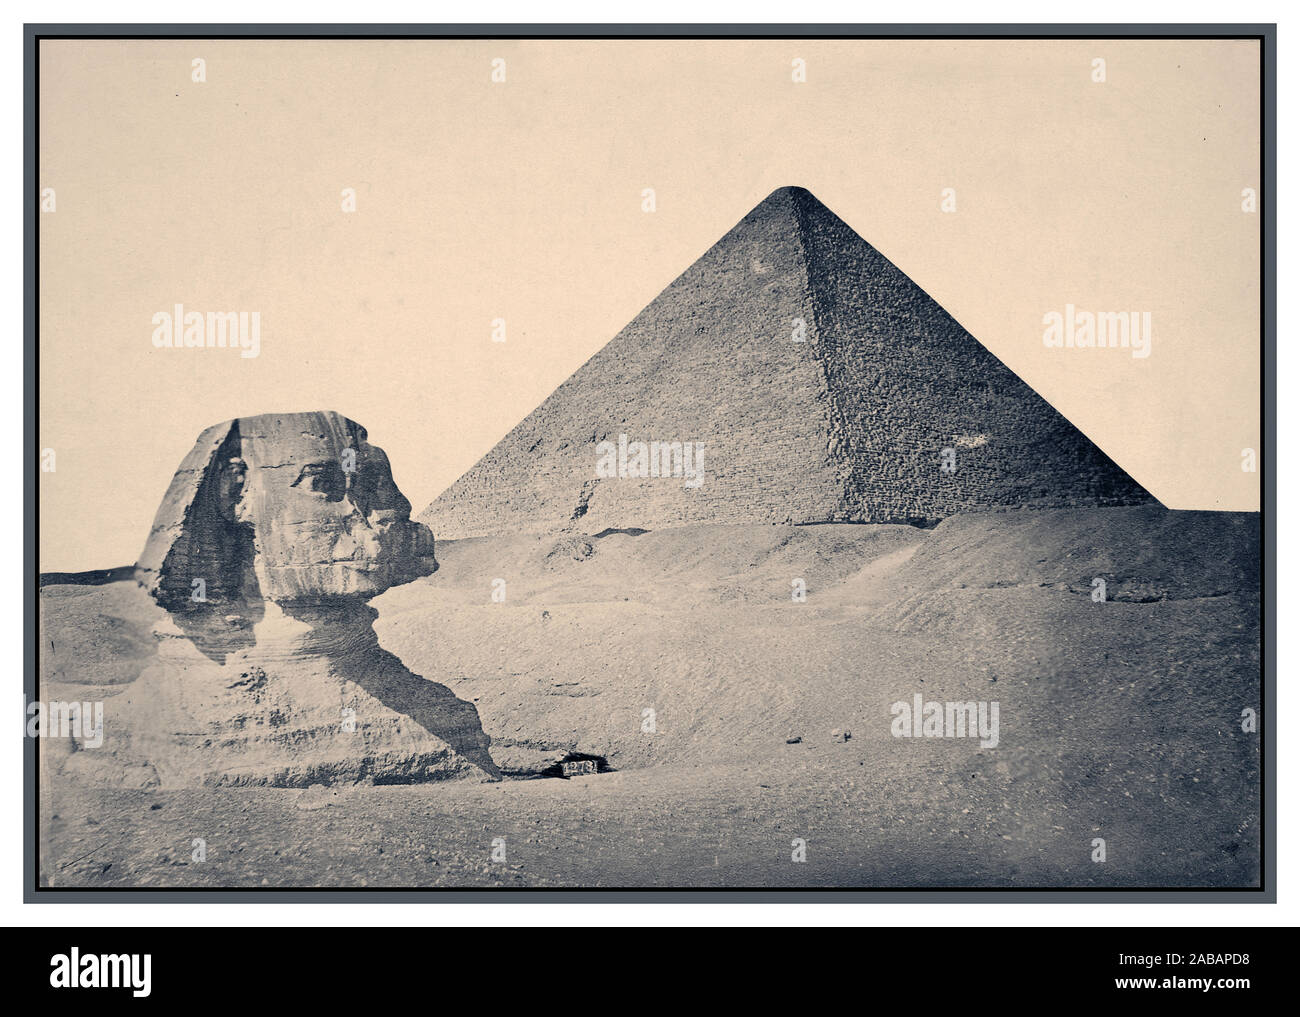 1880er Jahrgang Gizeh. Pyramide von khafre und der Sphinx 1880 B&W sepia Bild von Gizeh. Ca. 2575 v. Chr. - Ca. 2465 v. Chr. (Pyramiden und Sphinx), Pyramiden von Gizeh, Provincia de Maţrūḩ, Ägypten Afrika Ägypten Ägyptische antike, 4. Dynasty Große Sphinx von Gizeh, gemeinhin als die Sphinx von Gizeh oder nur die Sphinx, ein Kalkstein Statue eines liegenden Sphinx, ein Fabelwesen mit dem Körper eines Löwen und dem Kopf eines menschlichen Blick direkt von Westen nach Osten, es steht auf dem Plateau von Gizeh am Westufer des Nils in Gizeh, Ägypten. Stockfoto